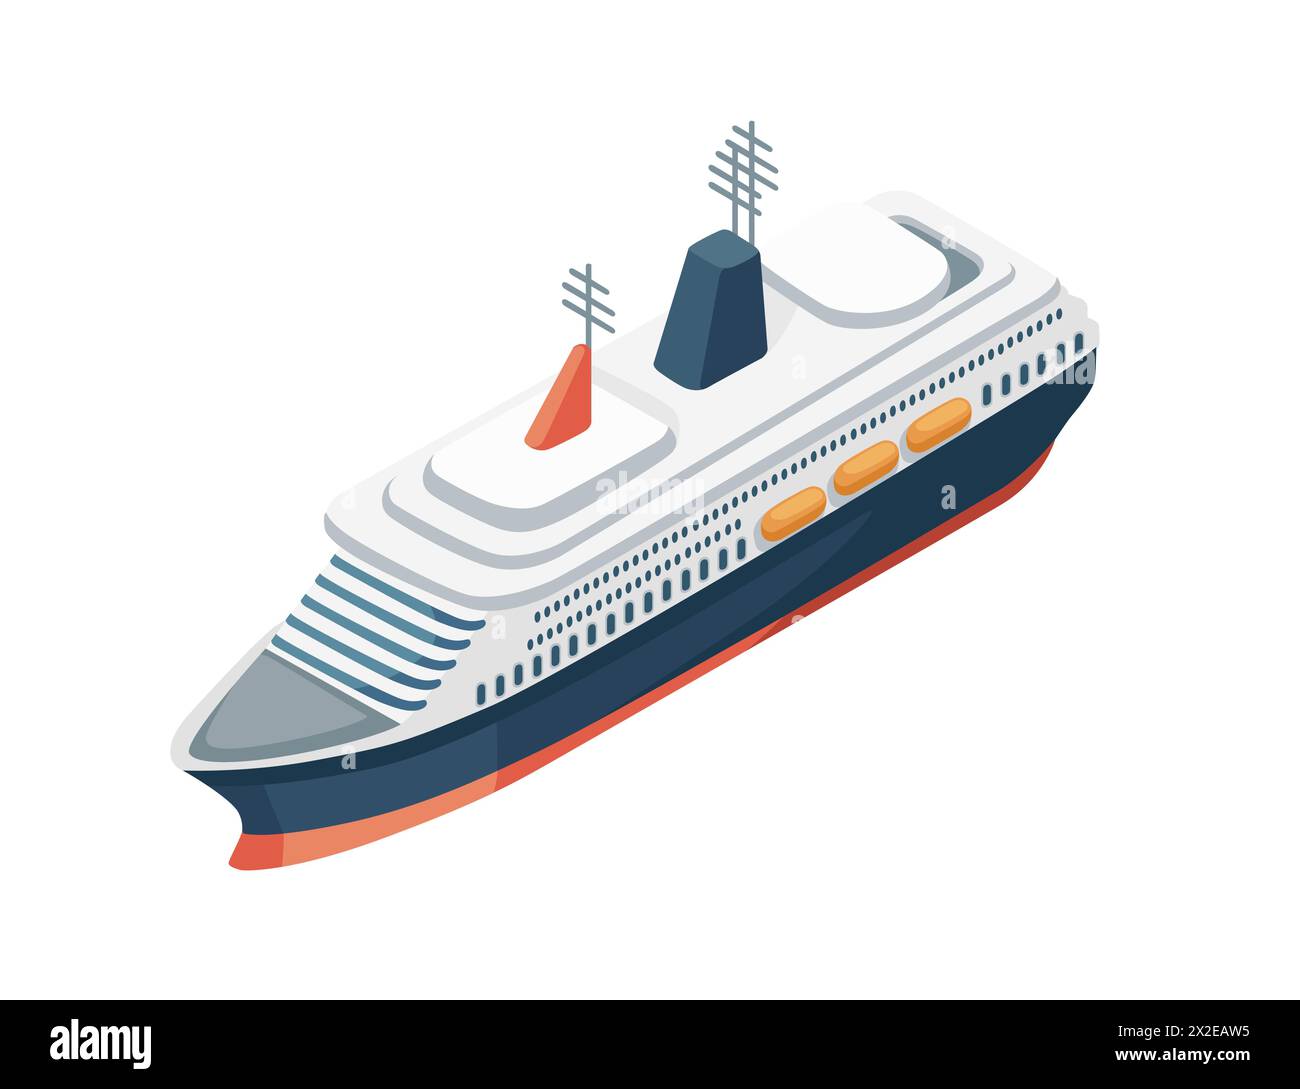 Bir Kreuzfahrtschiff Tourismus Reise nautische Schiff Vektor Illustration isoliert auf weißem Hintergrund Stock Vektor